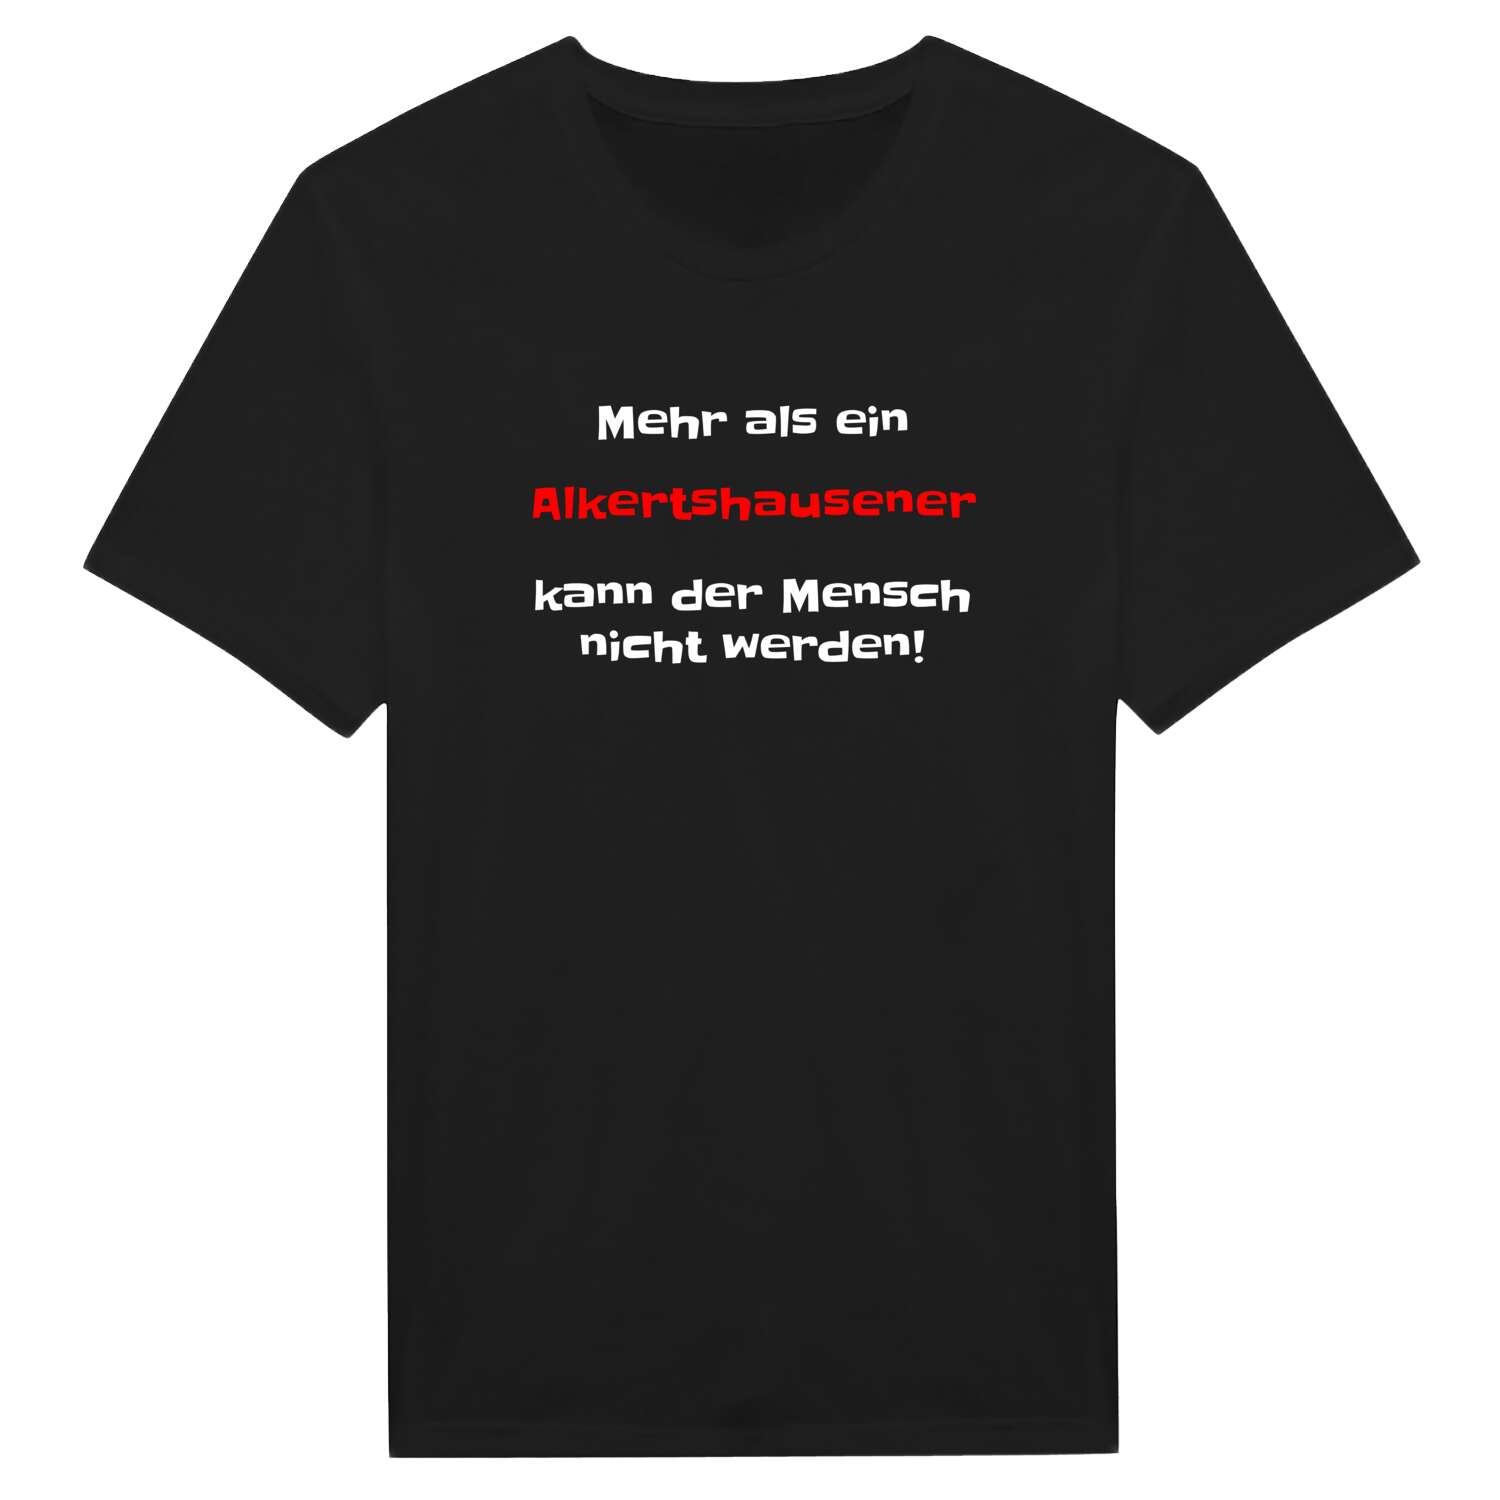 Alkertshausen T-Shirt »Mehr als ein«